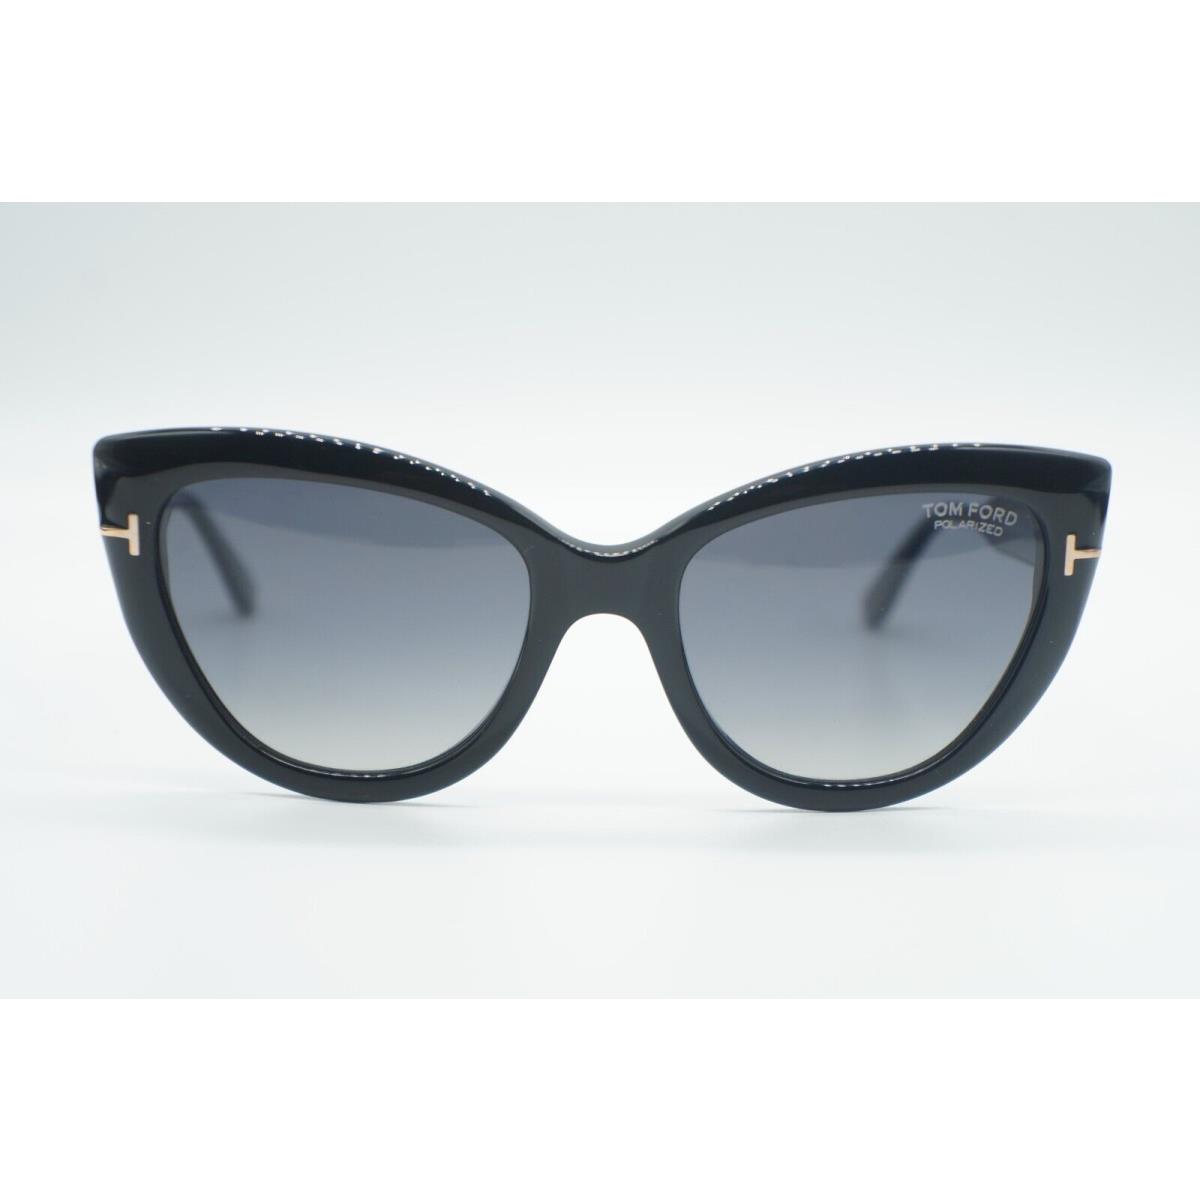 Tom Ford eyeglasses  - Frame: Black 1